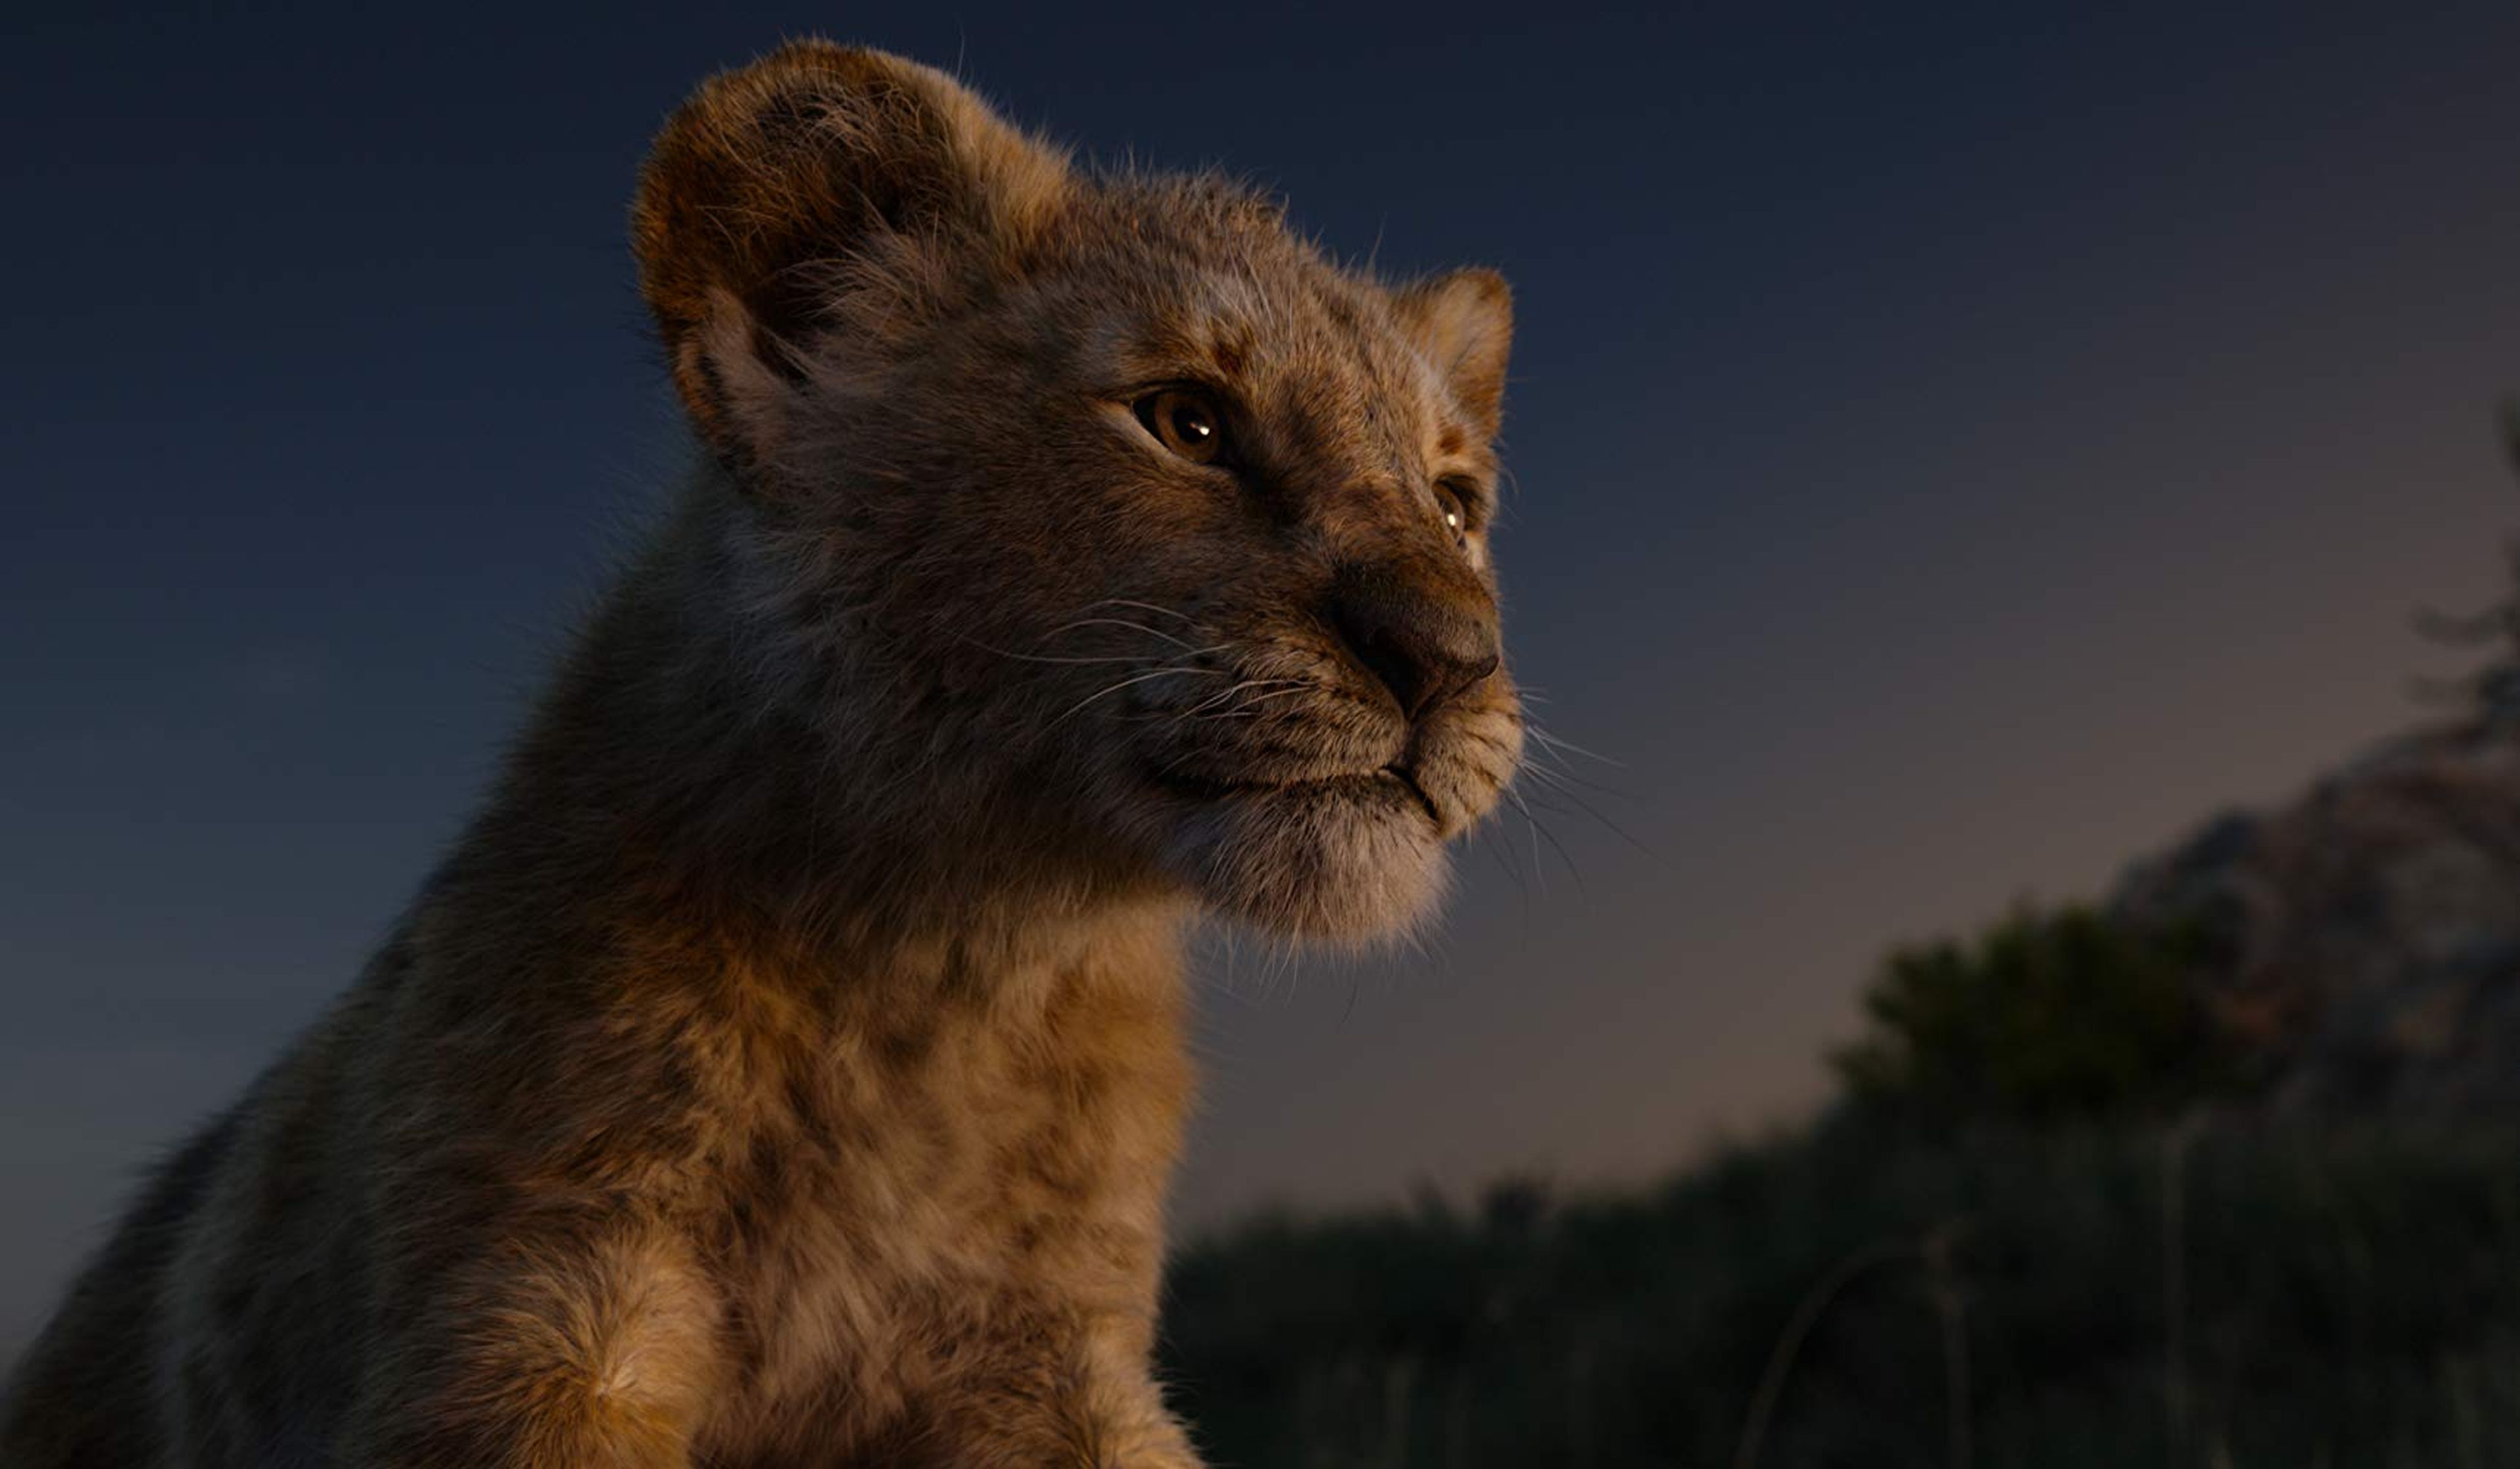 El rey león (2019)